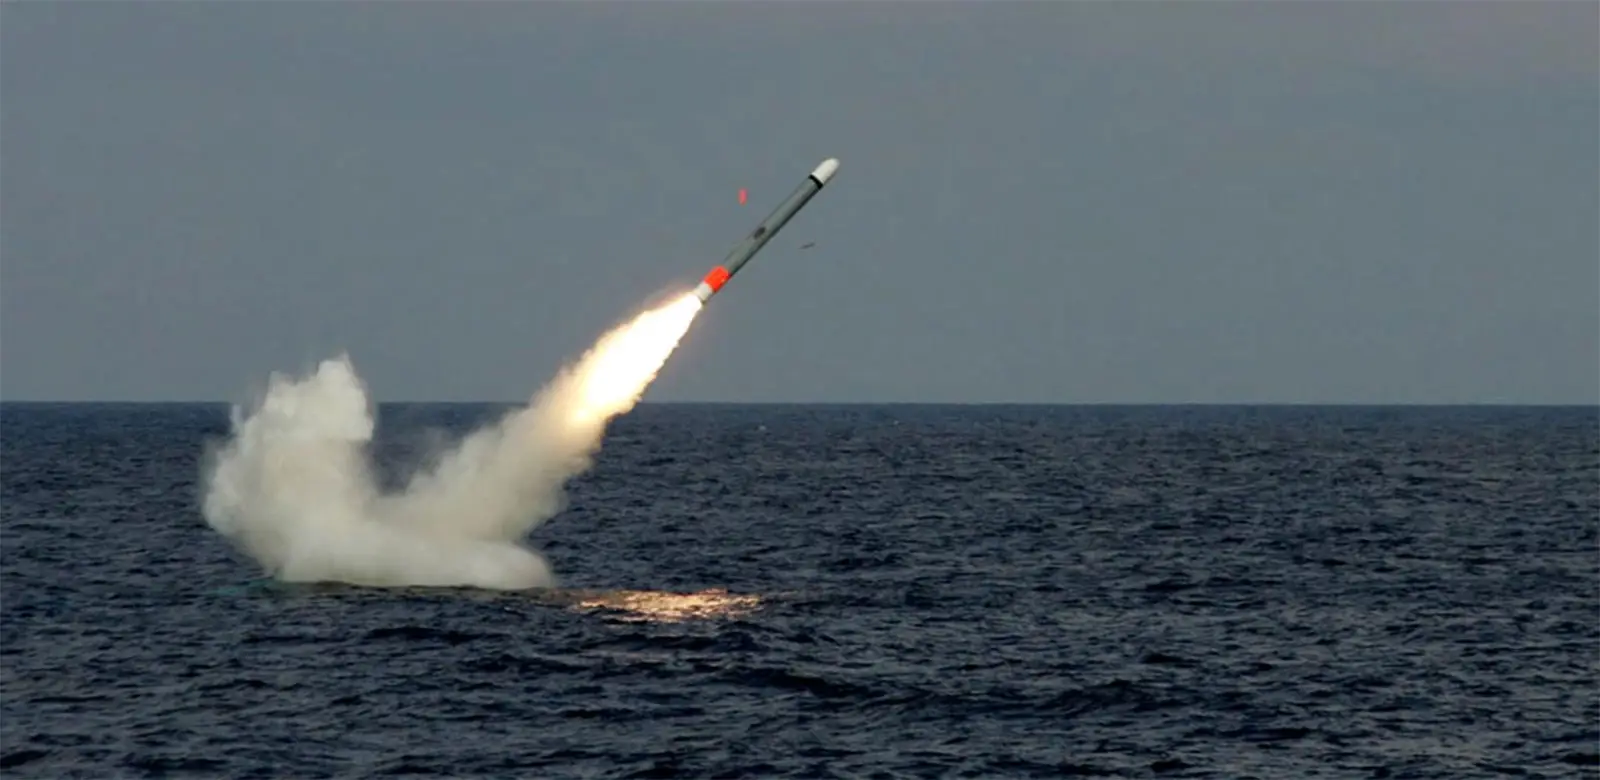 Úc đồng ý mua 200 tên lửa tầm xa Tomahawk từ Mỹ